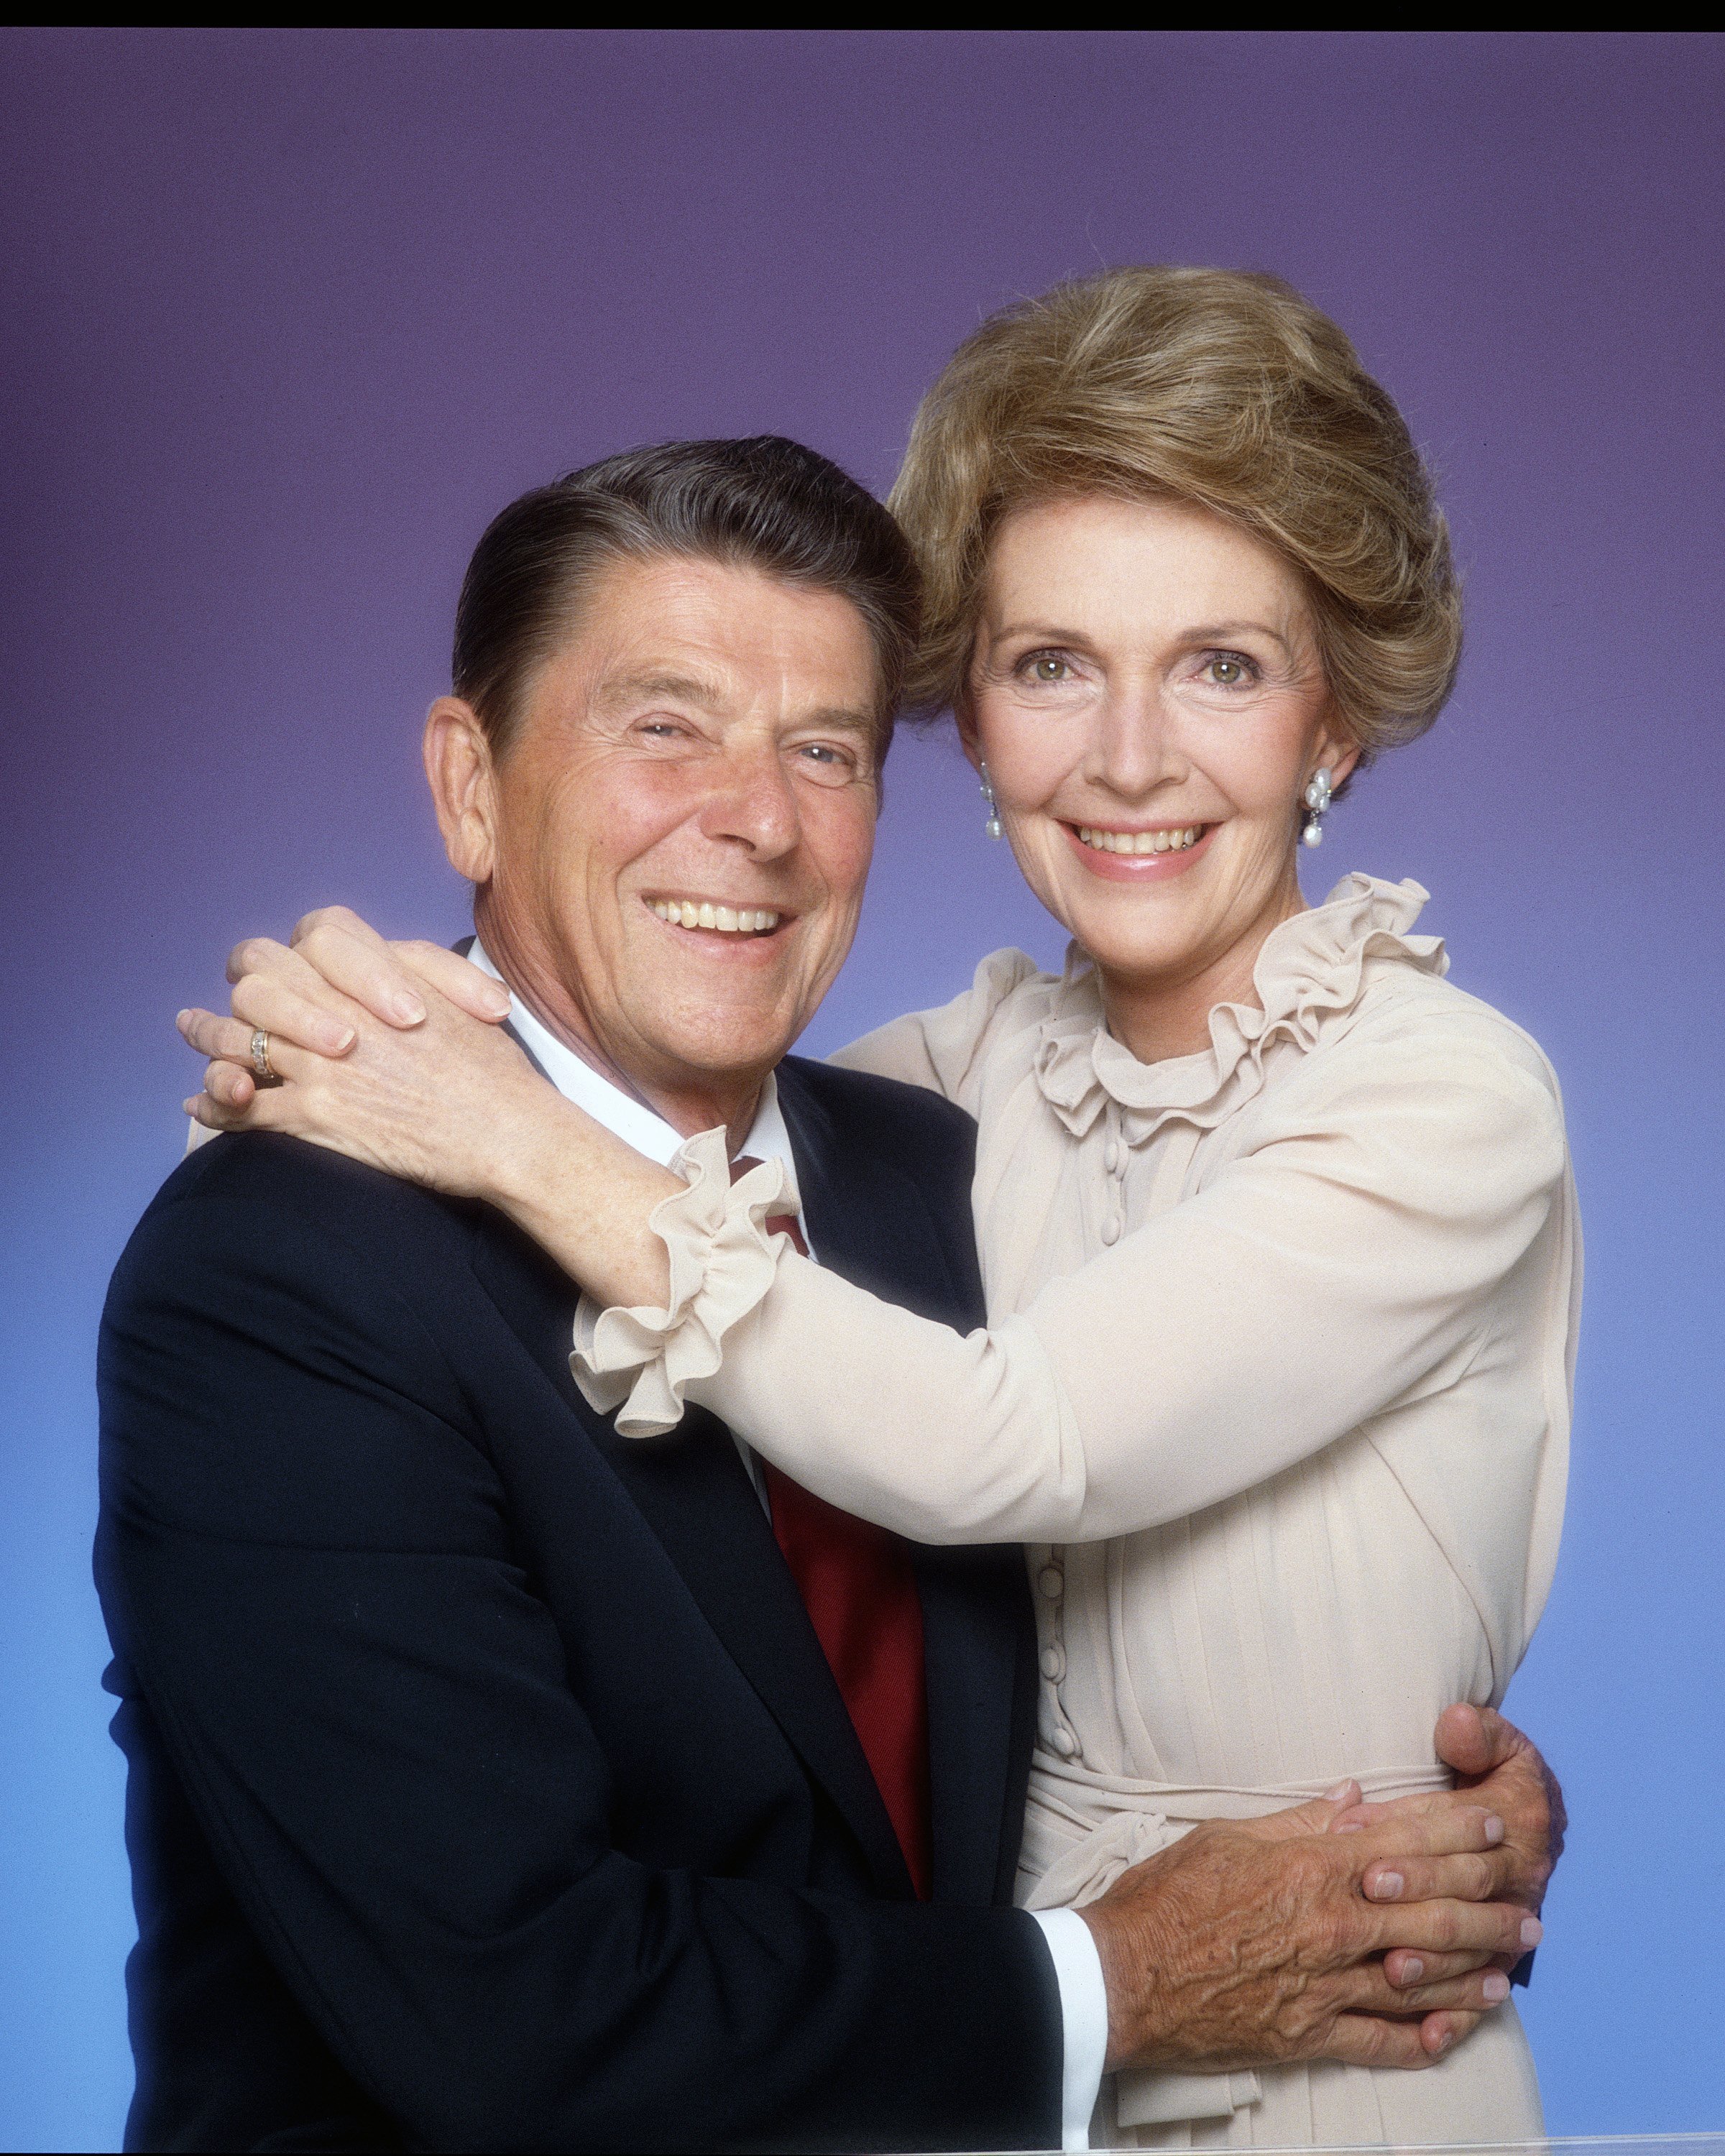 Le président Ronald Reagan et son épouse Nancy posent pour une séance de portraits en janvier 1981 à Los Angeles, en Californie. | Source : Getty Images